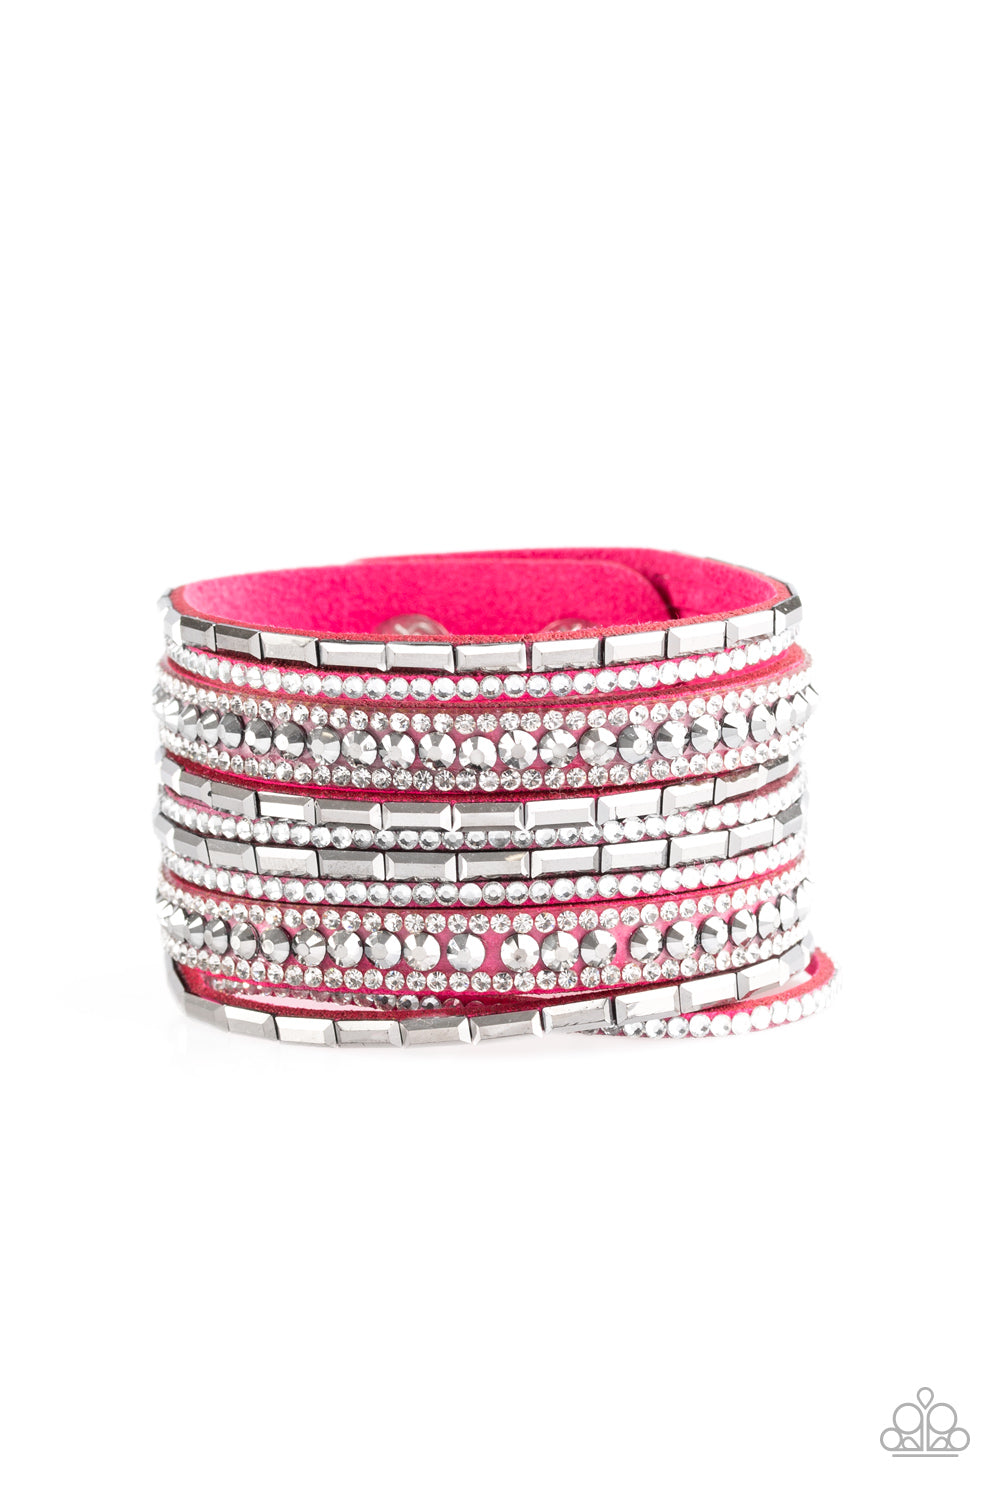 Wham Bam Glam-Pink Bracelet